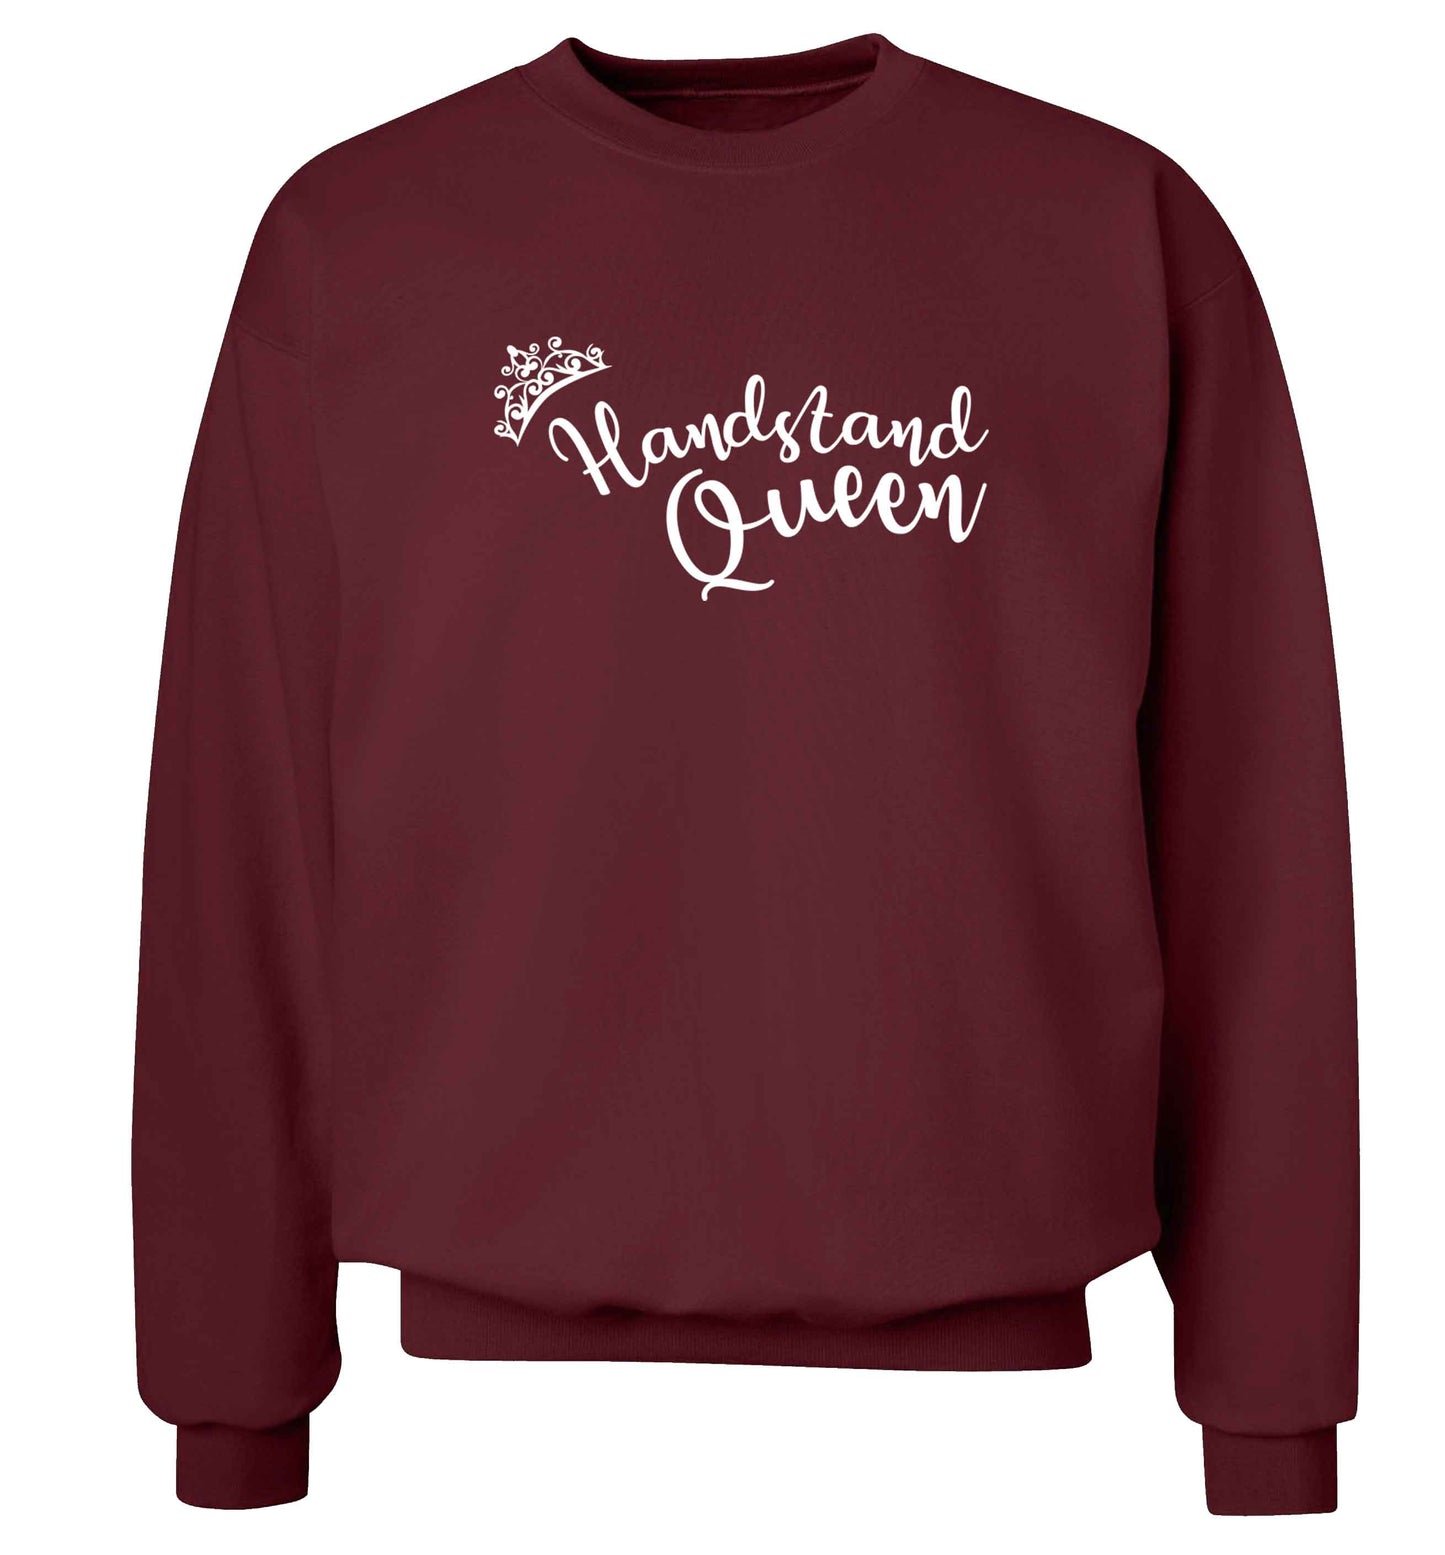 Handstand Queen Adult's unisex maroon Sweater 2XL